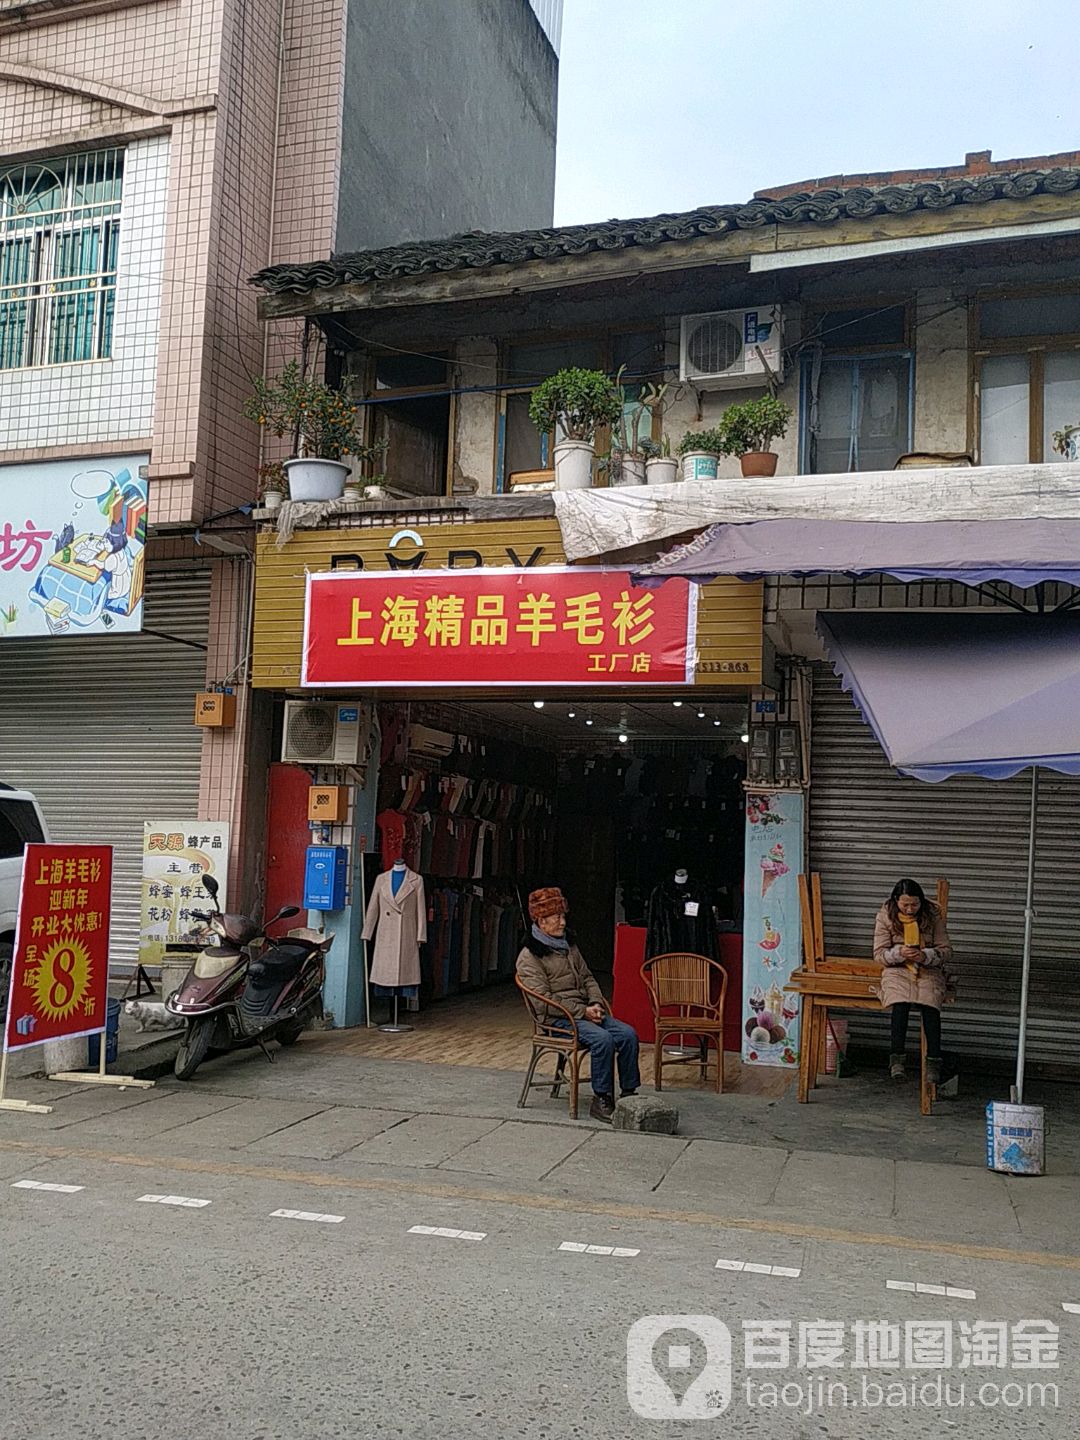 上海精品羊毛衫工厂店